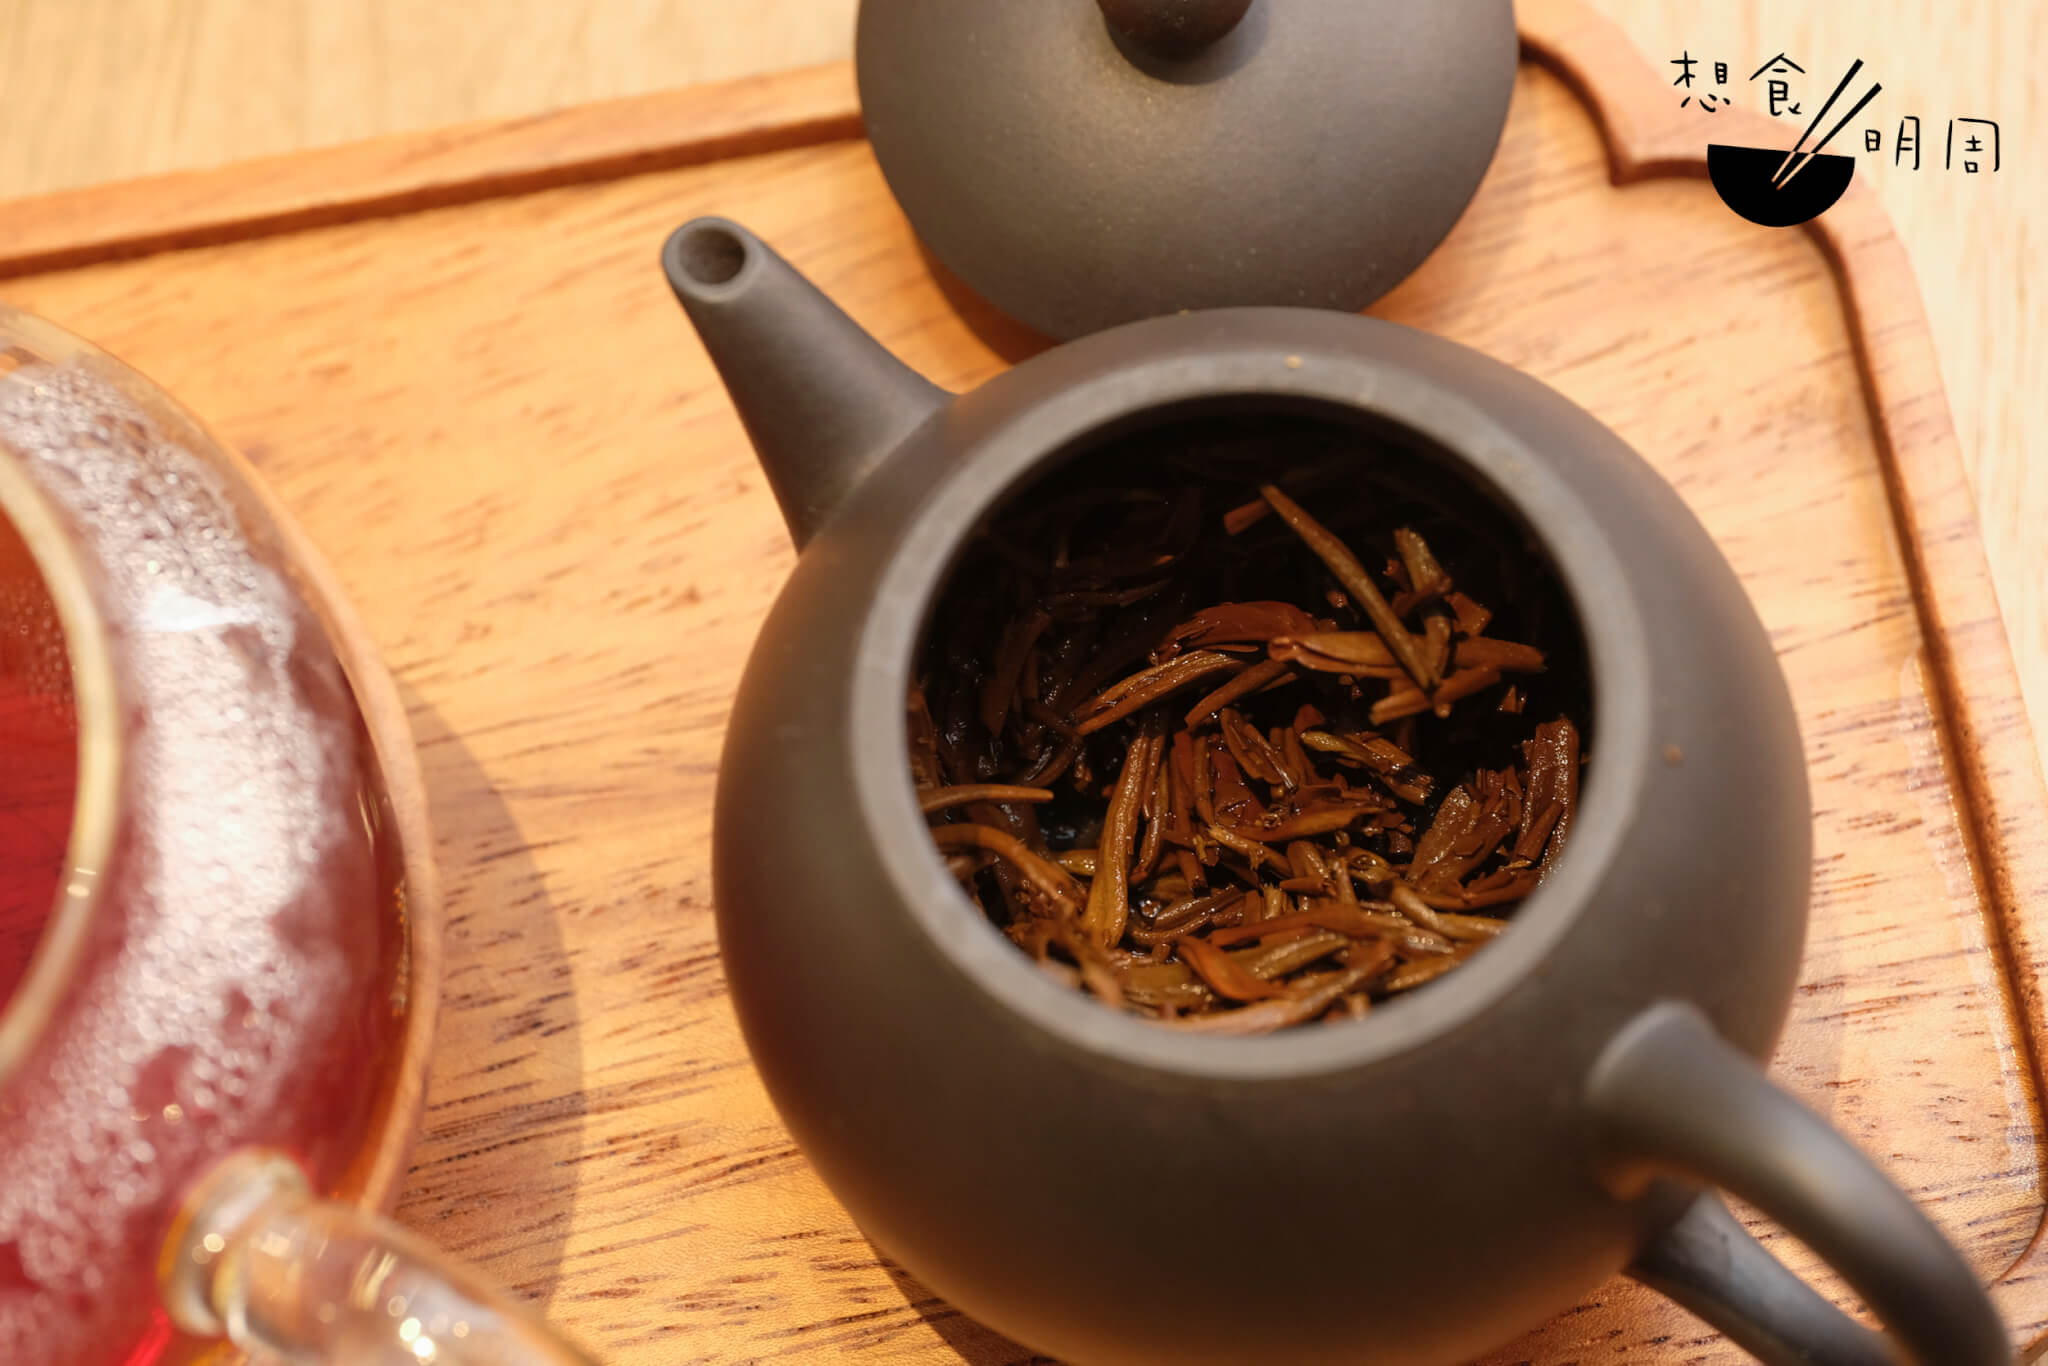 這裏也提供多款中國原片茶葉選擇，例如滇紅、普洱等，都用紫砂茶壺盛載，讓客人放慢步伐品嘗。